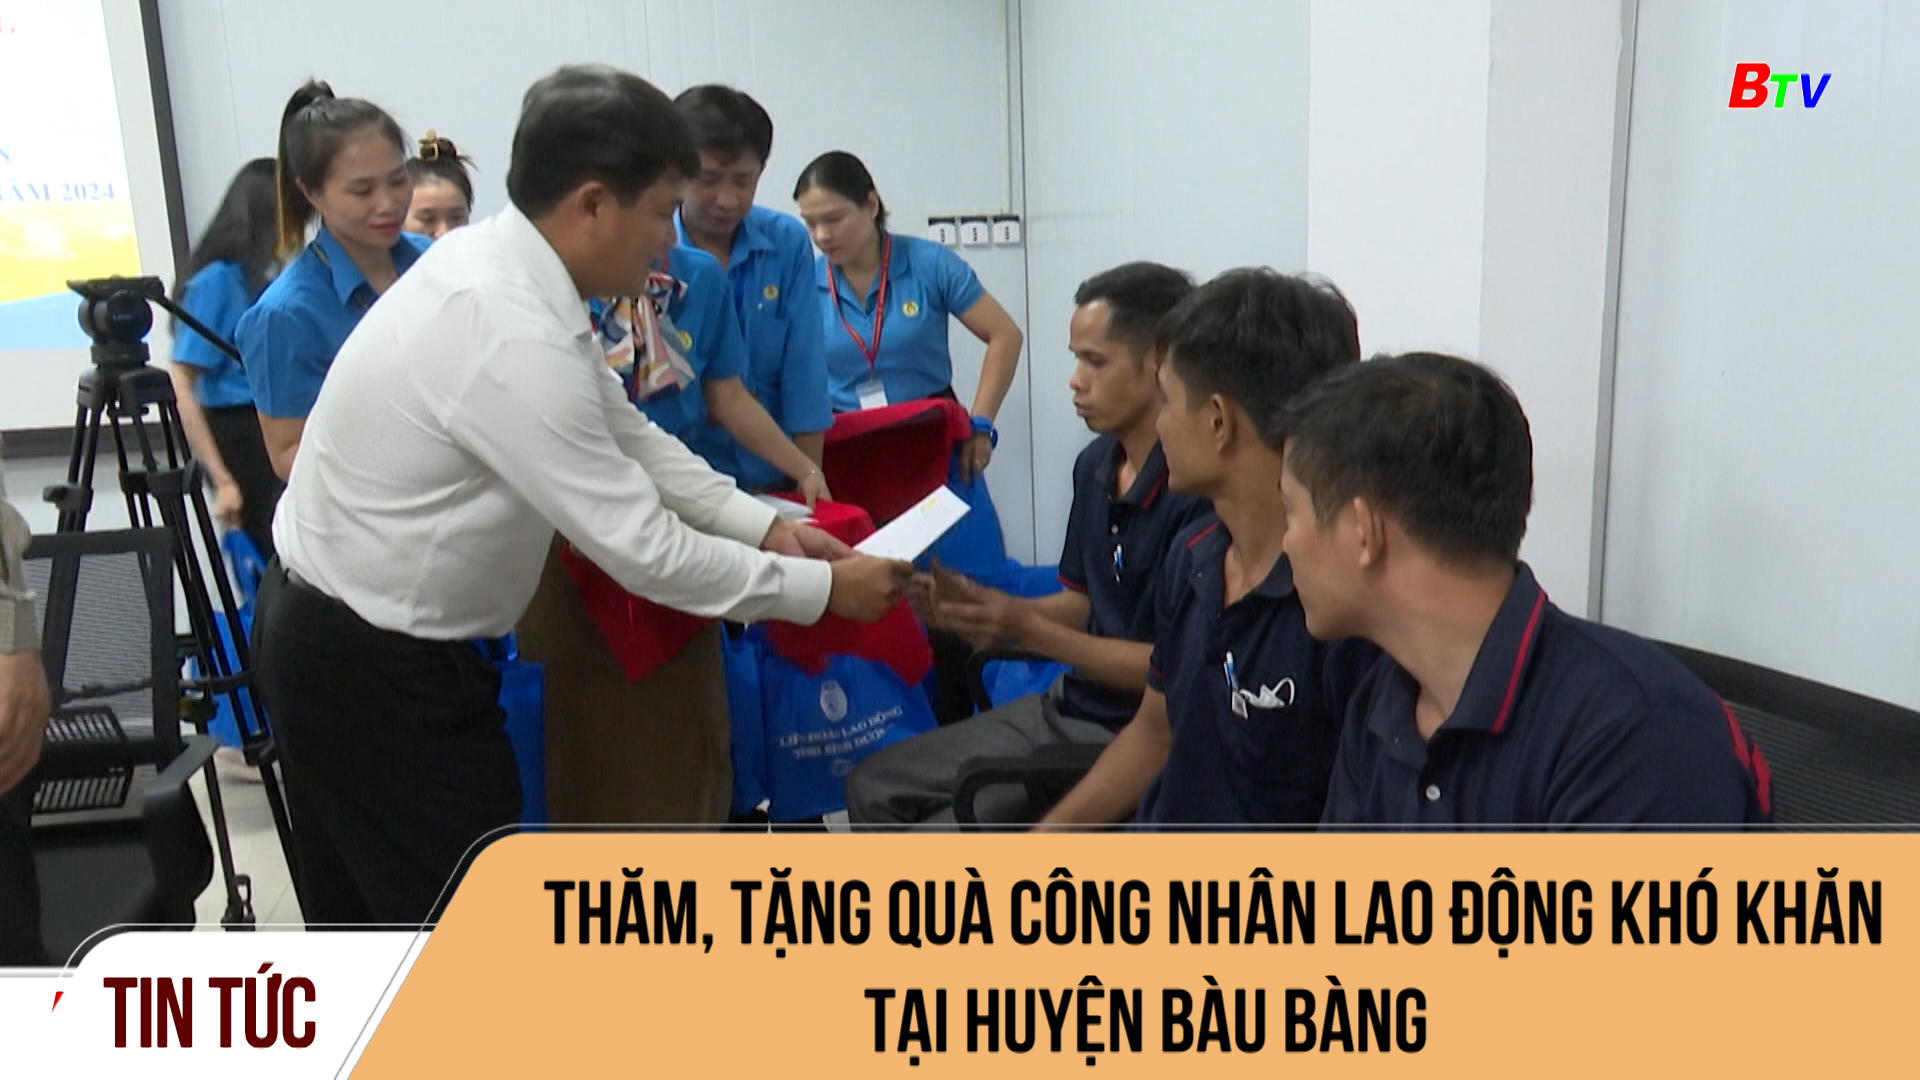 Thăm, tặng quà công nhân lao động khó khăn tại huyện Bàu Bàng